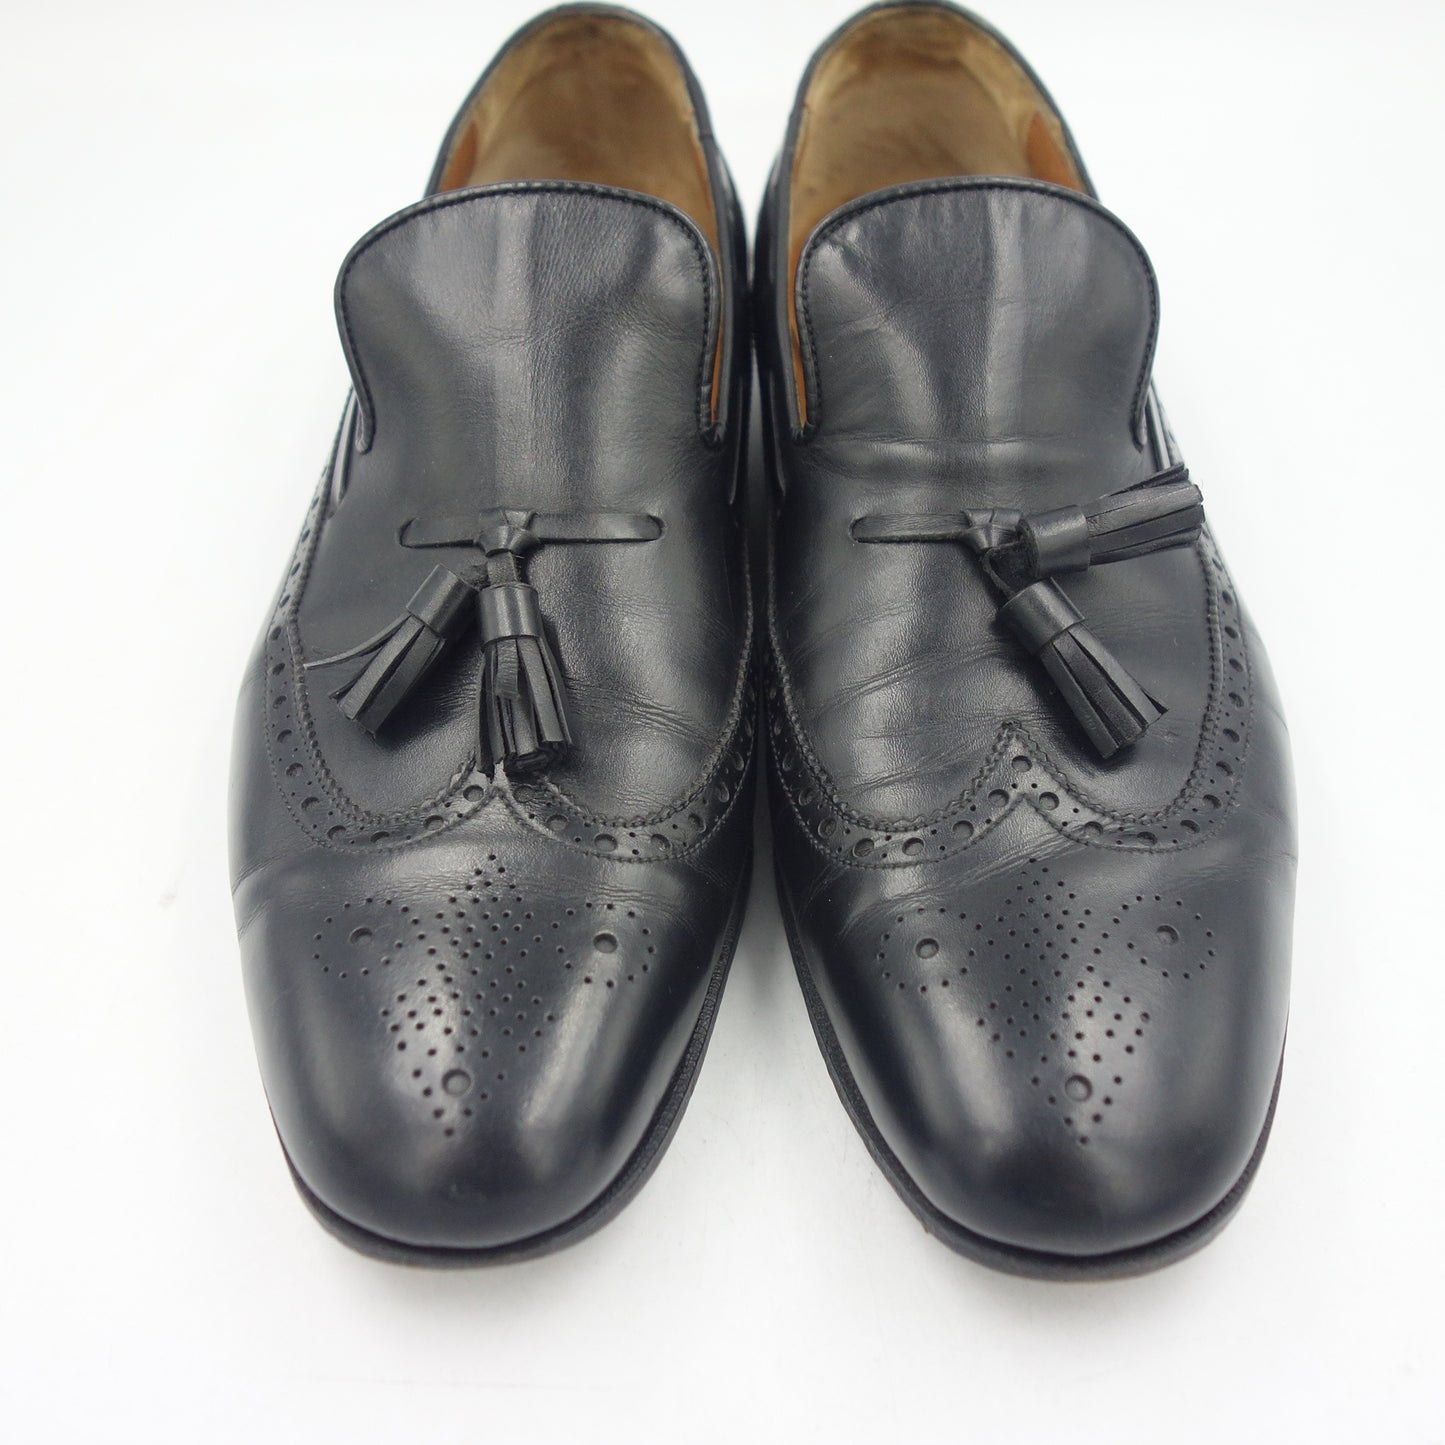 Good condition◆JM Weston leather shoes tassel loafers 181 black men's size 7C JMWESTON [LA] 